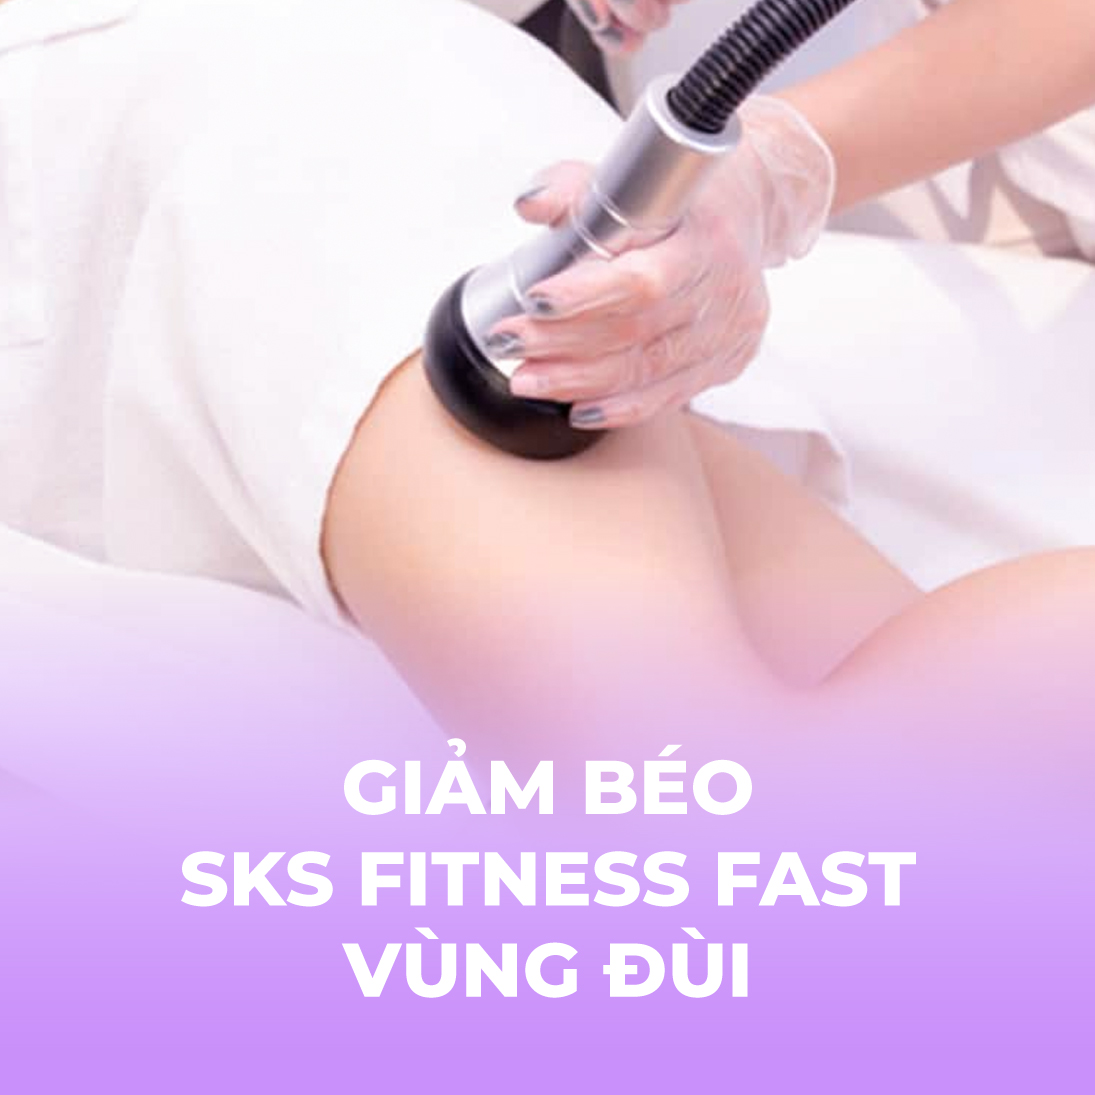 Giảm béo - SKS Fitness Fast - vùng đùi - 1 buổi